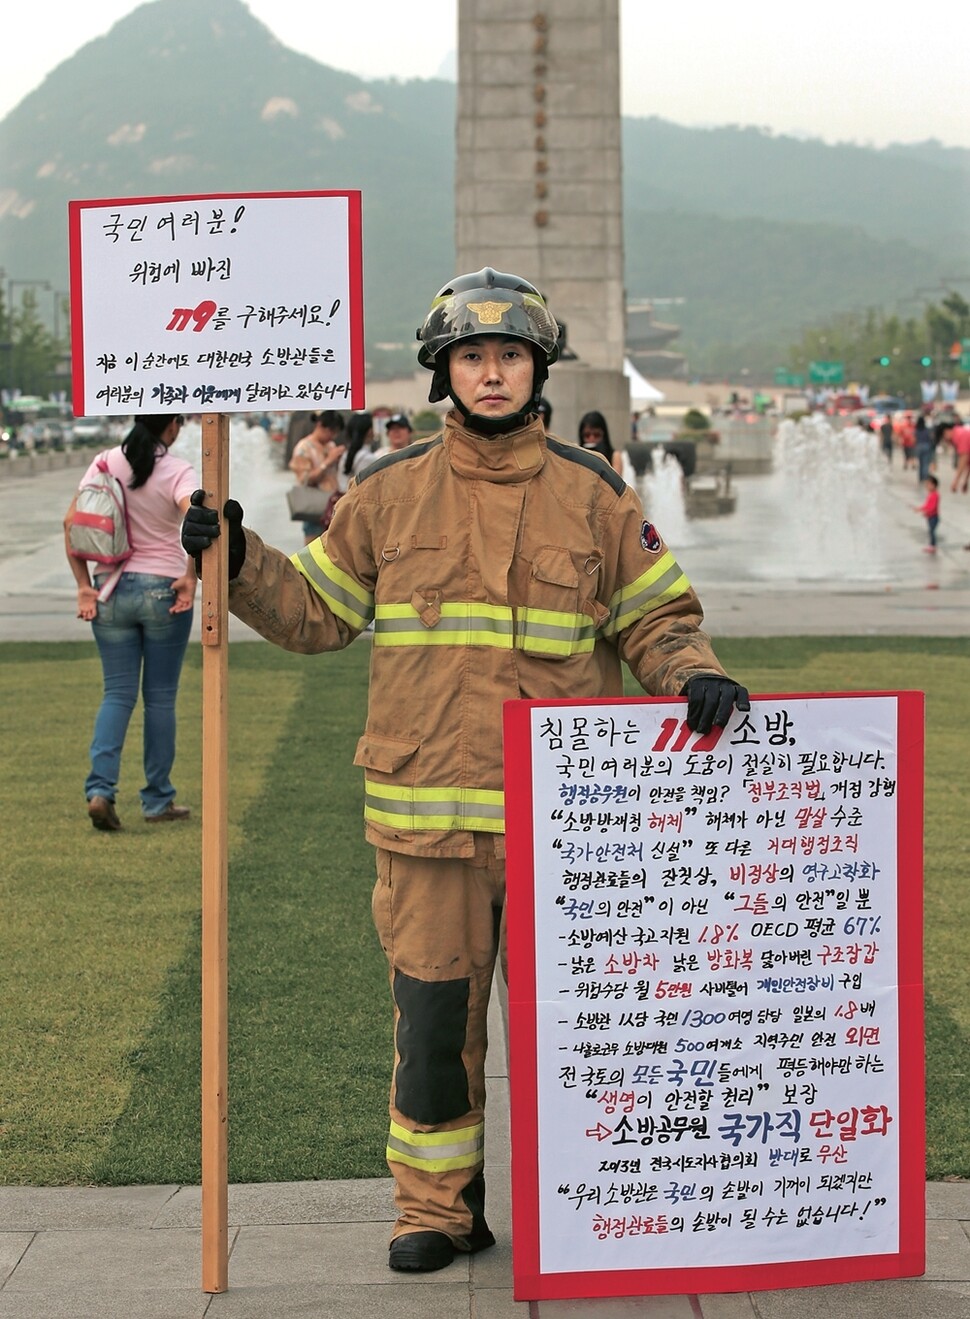 소방관들이 2015년 6월 ‘소방공무원 국가직 전환’을 요구하며 서울 광화문 광장에서 1인시위를 벌이고 있다. 일반 노동자의 근무환경은 산업안전보건법으로 보장받지만, 소방공무원의 근무환경에 대한 규제는 실제 존재하지 않는 것이나 다름없다. 정용일 기자